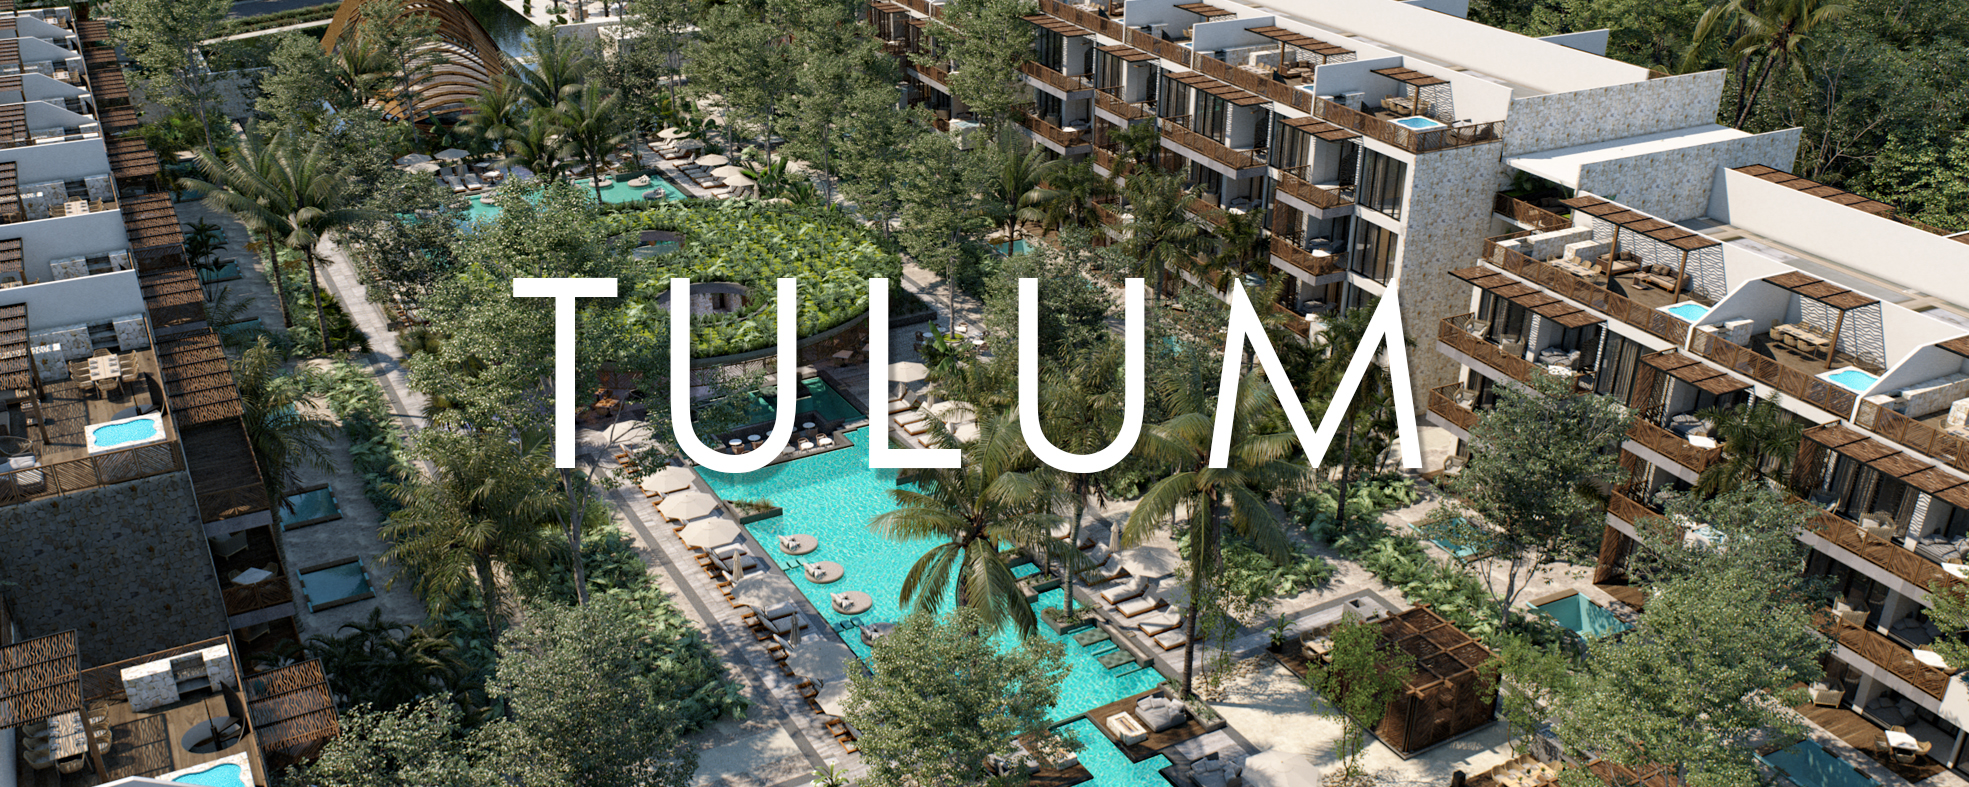 Tulum es lo más cercano al paraíso que podremos conocer: cristalinas aguas caribeñas color turquesa, playas de fina arena blanca, frondosa vegetación, aves tropicales, cenotes subterráneos y desde luego las famosas ruinas mayas.